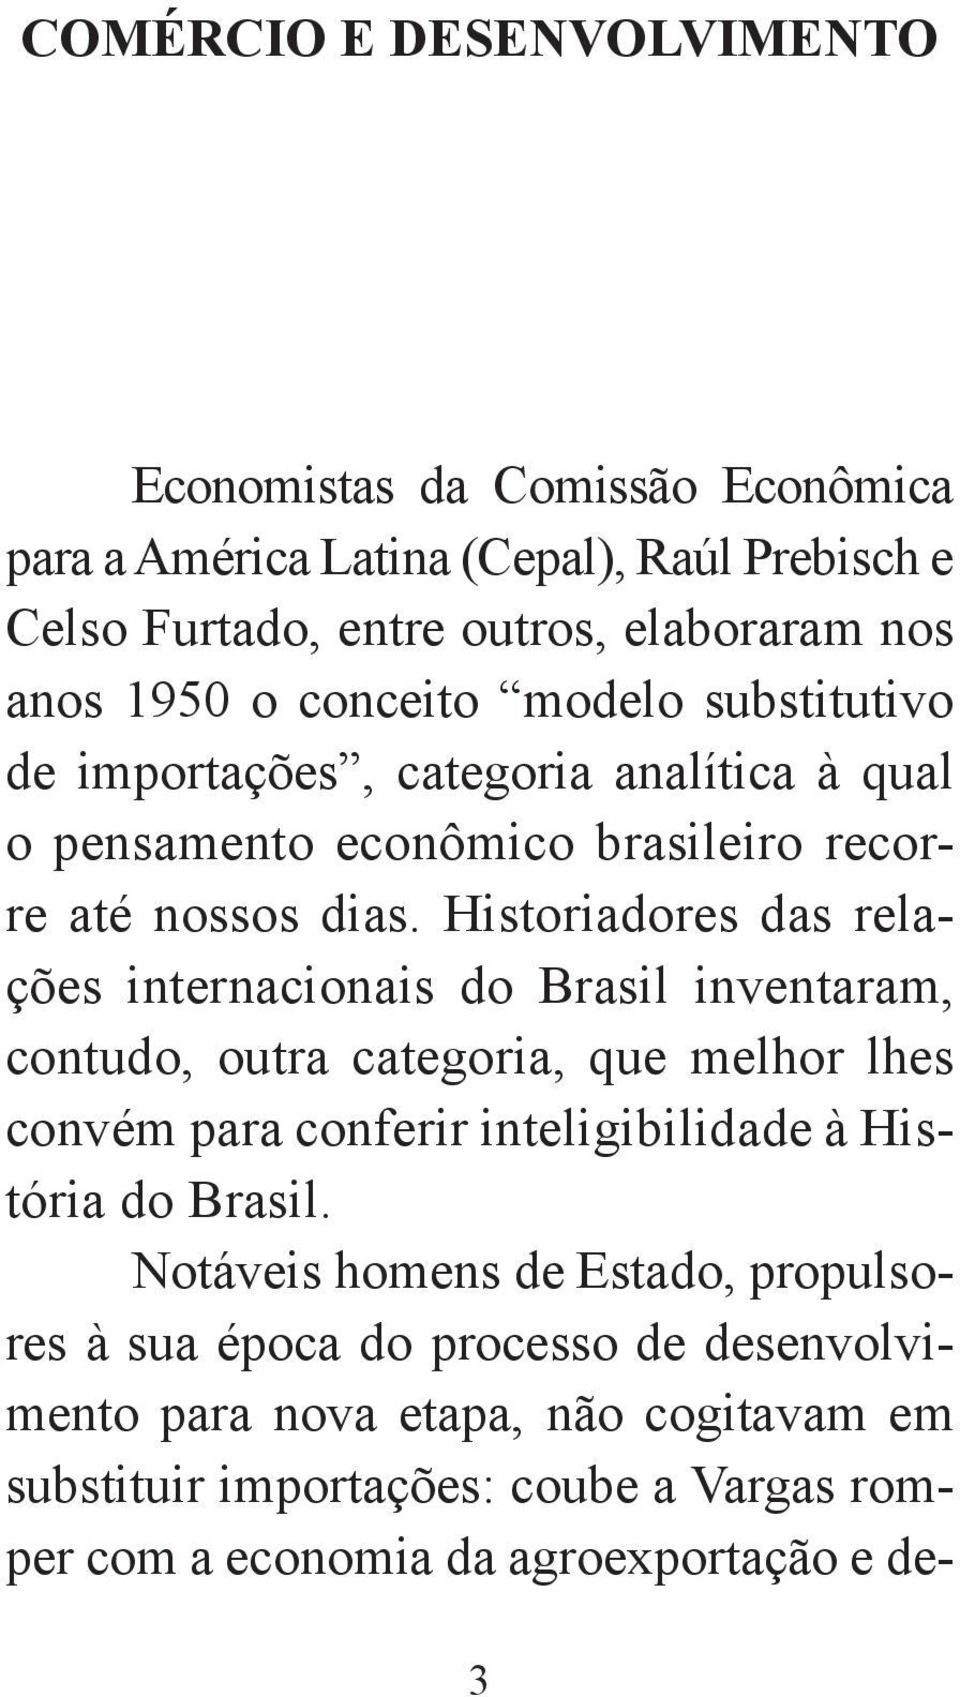 Historiadores das relações internacionais do Brasil inventaram, contudo, outra categoria, que melhor lhes convém para conferir inteligibilidade à História do Brasil.